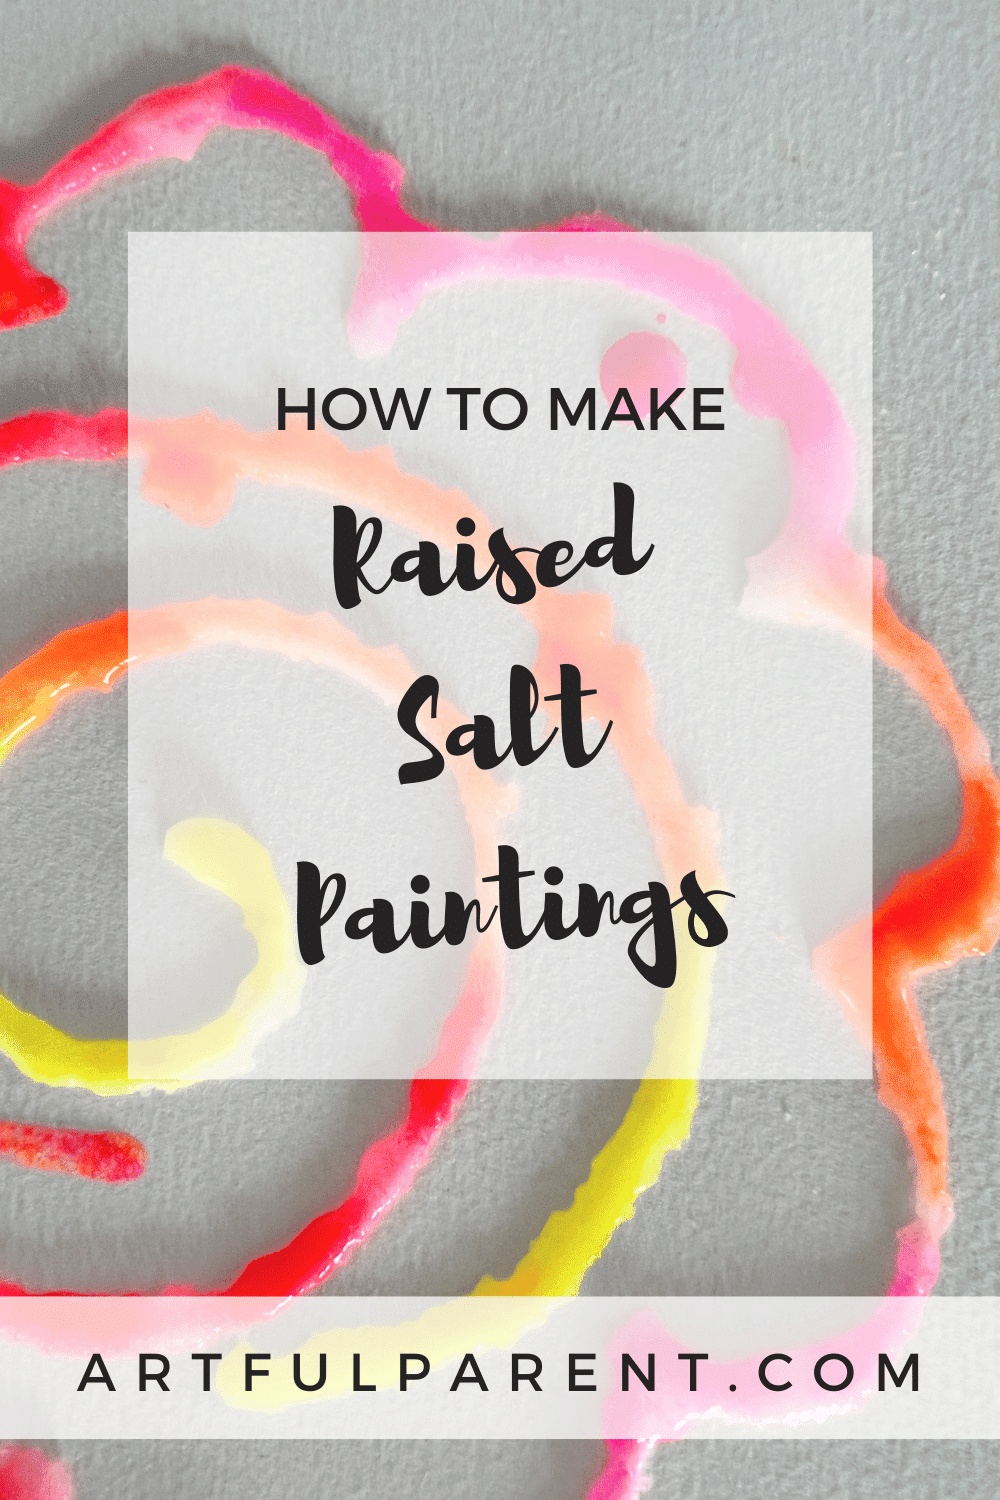 How to Make Raised Salt Paintings